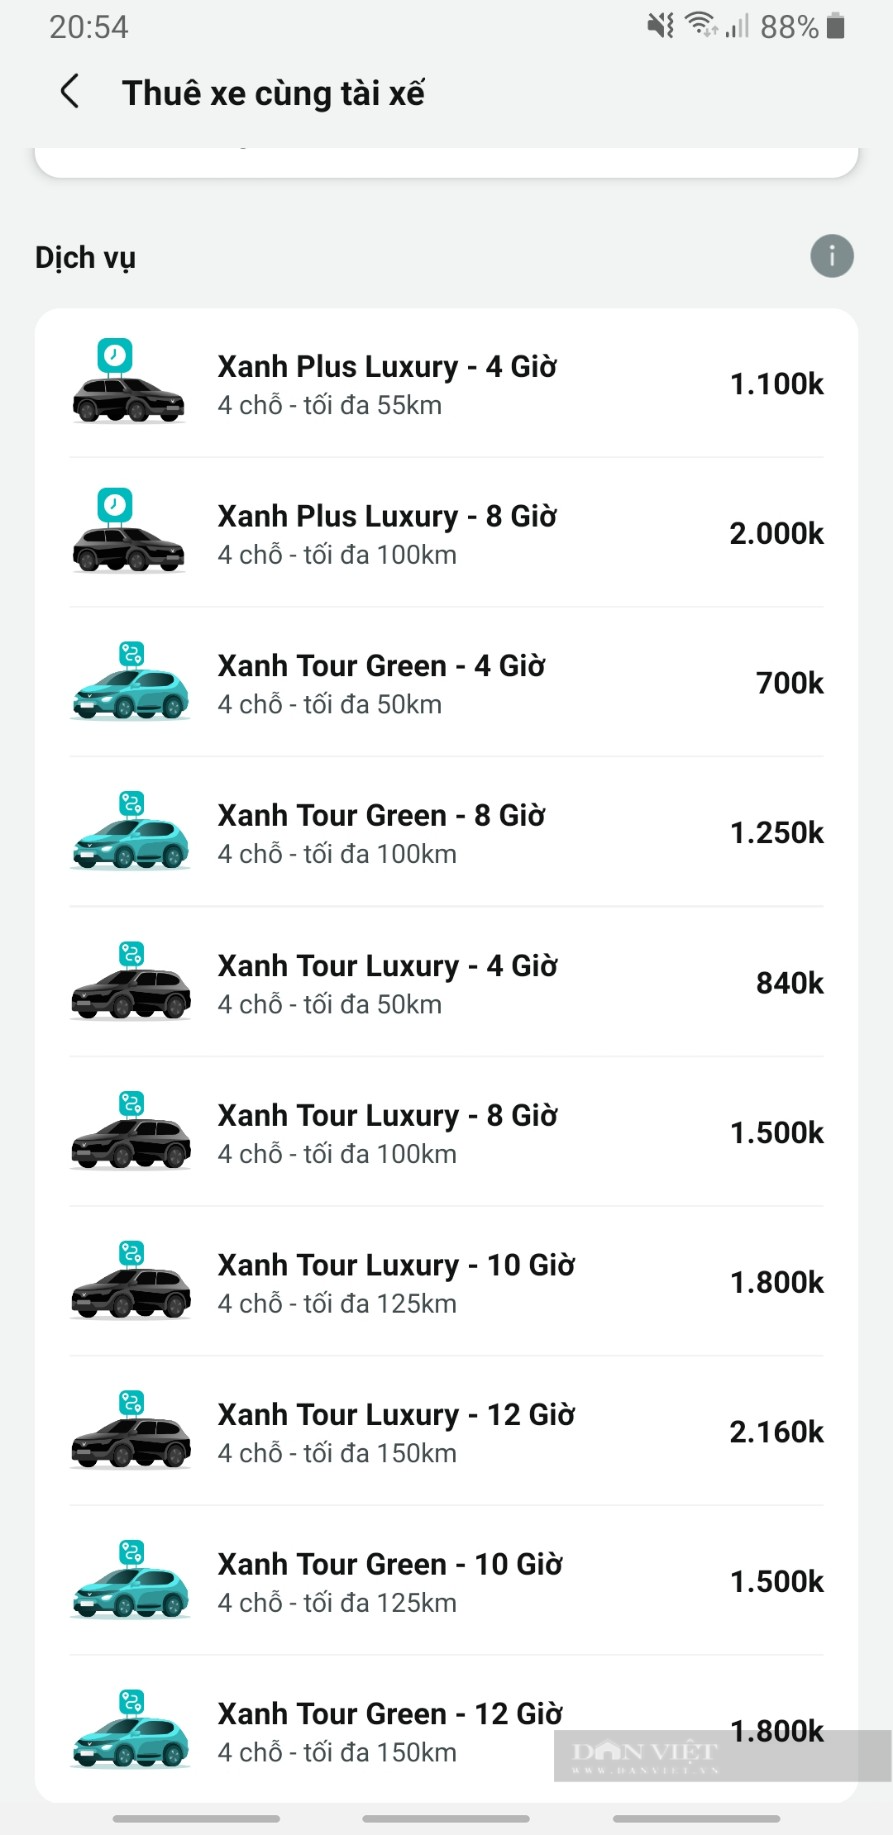 Bất ngờ giá thuê xe điện VinFast của Taxi Xanh SM mới bổ sung dịch vụ - Ảnh 2.